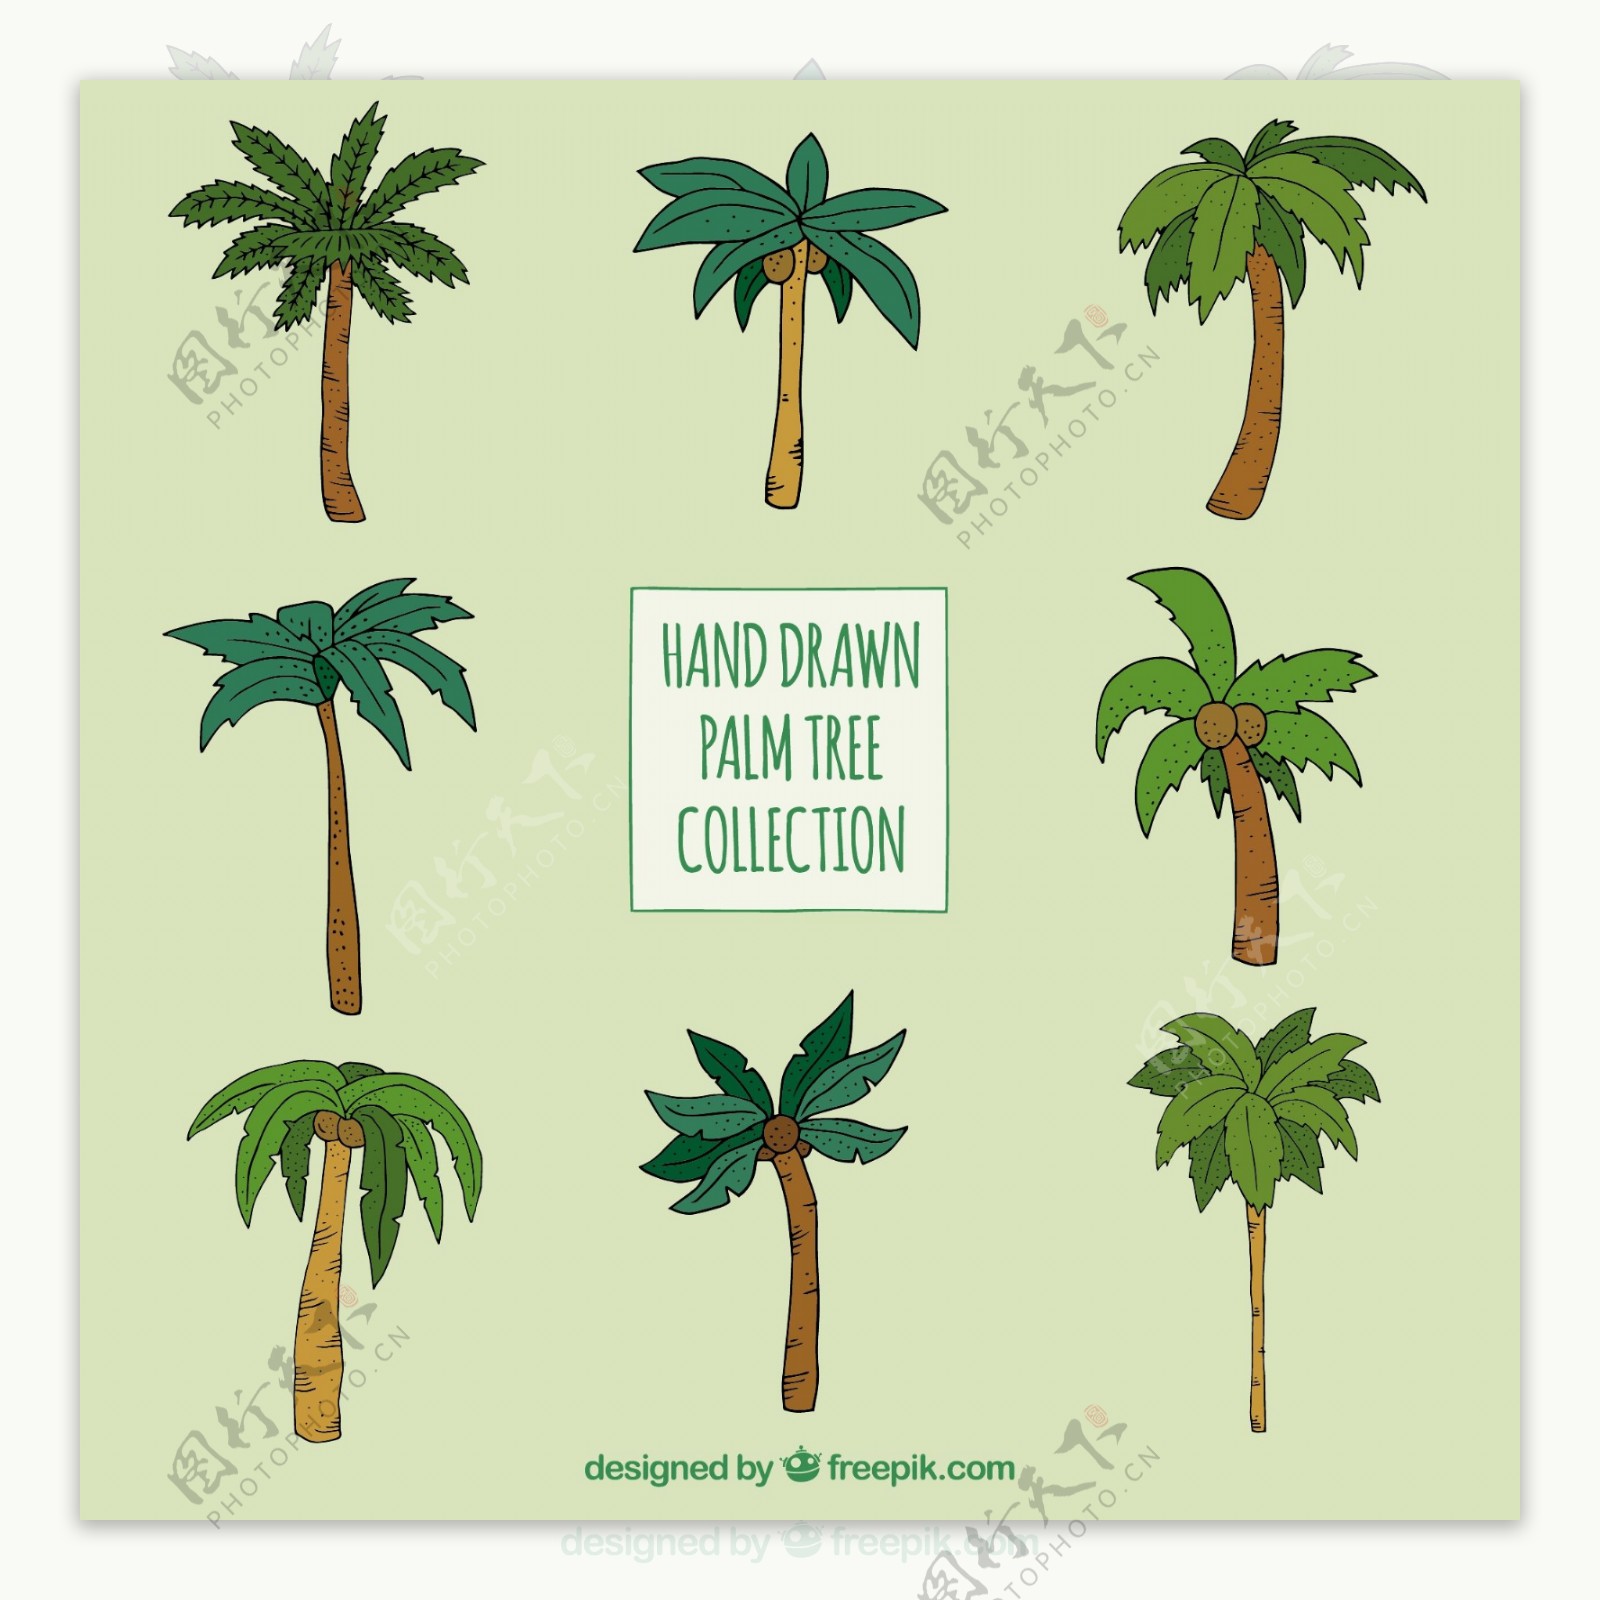 各种类型的手绘棕榈树